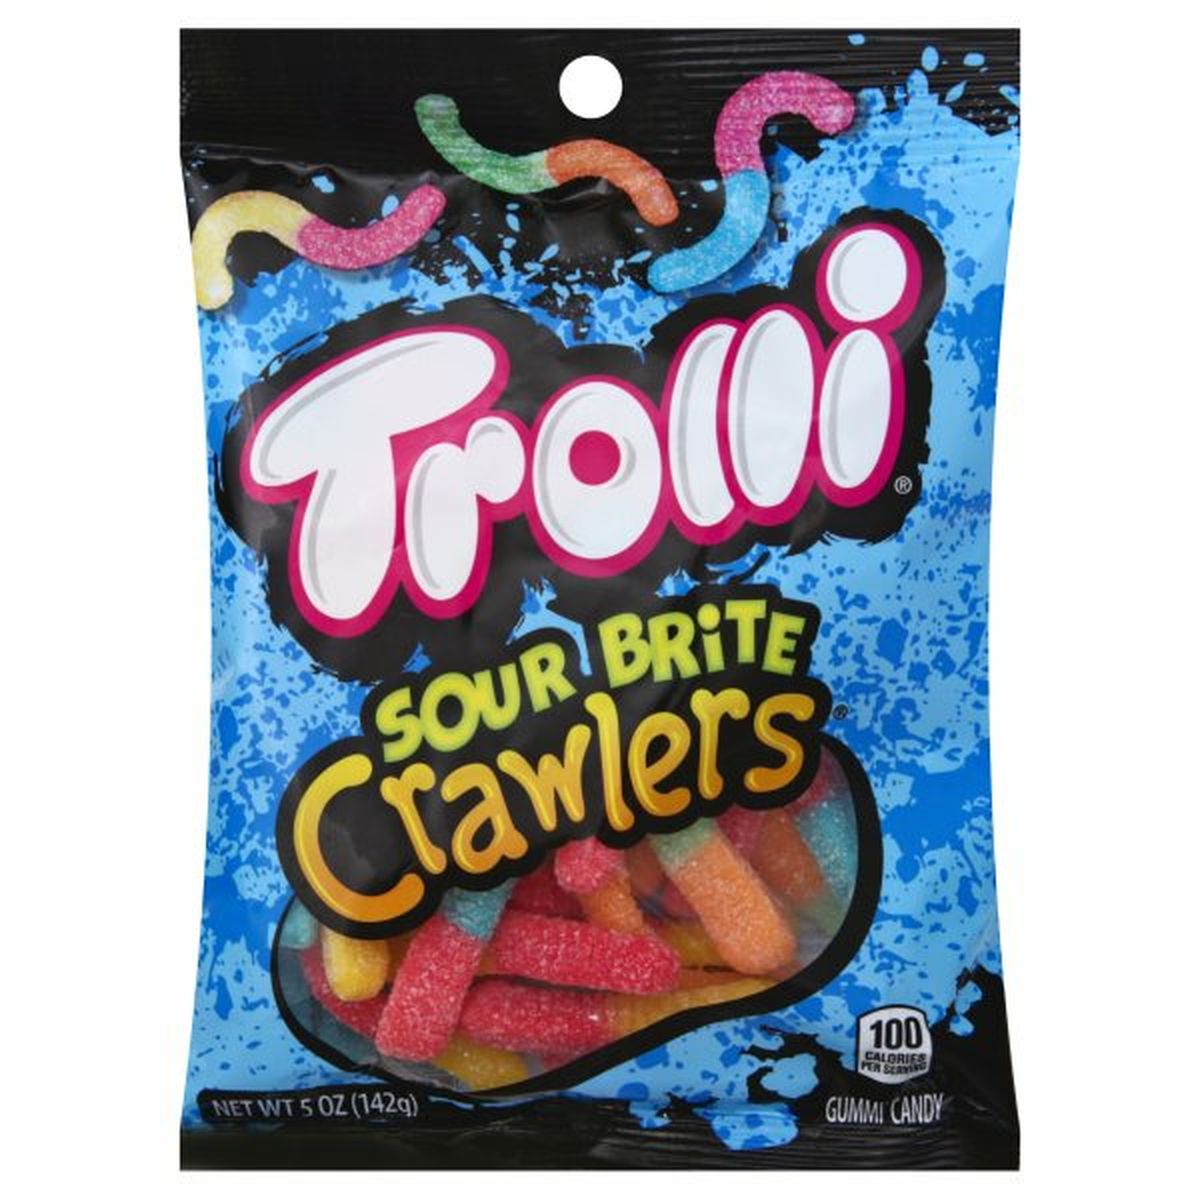 Calories in Trolli Gummi Candy, Crawlers